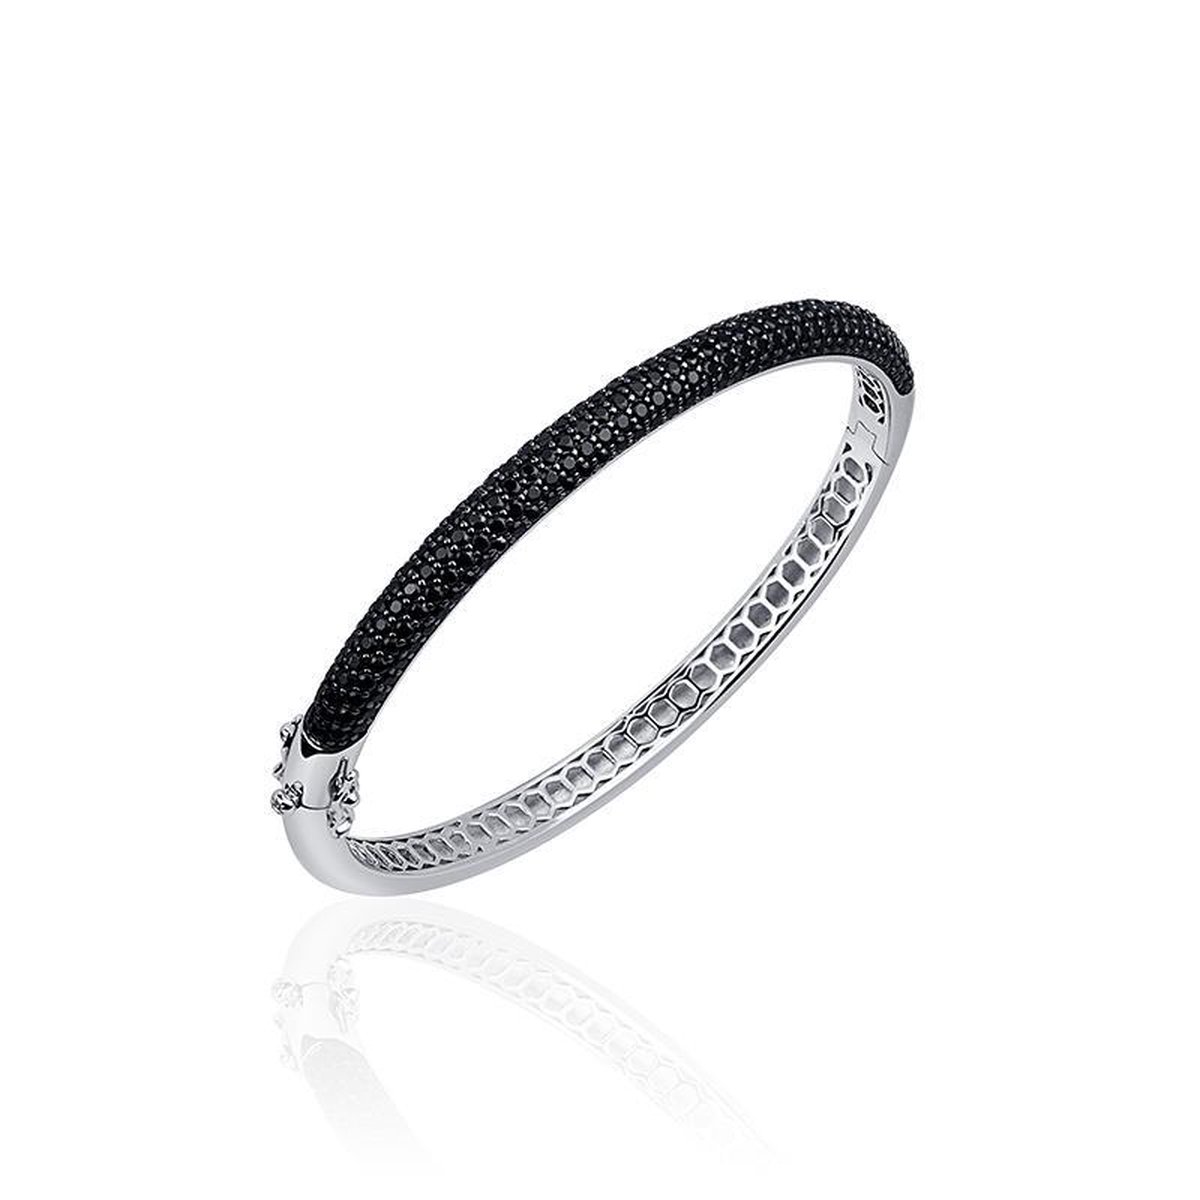 Jewels Inc. - Armband - Bangle Half Bol gezet met Zwart Zirkonia - 6mm Breed - Maat 60 - Gerhodineerd Zilver 925